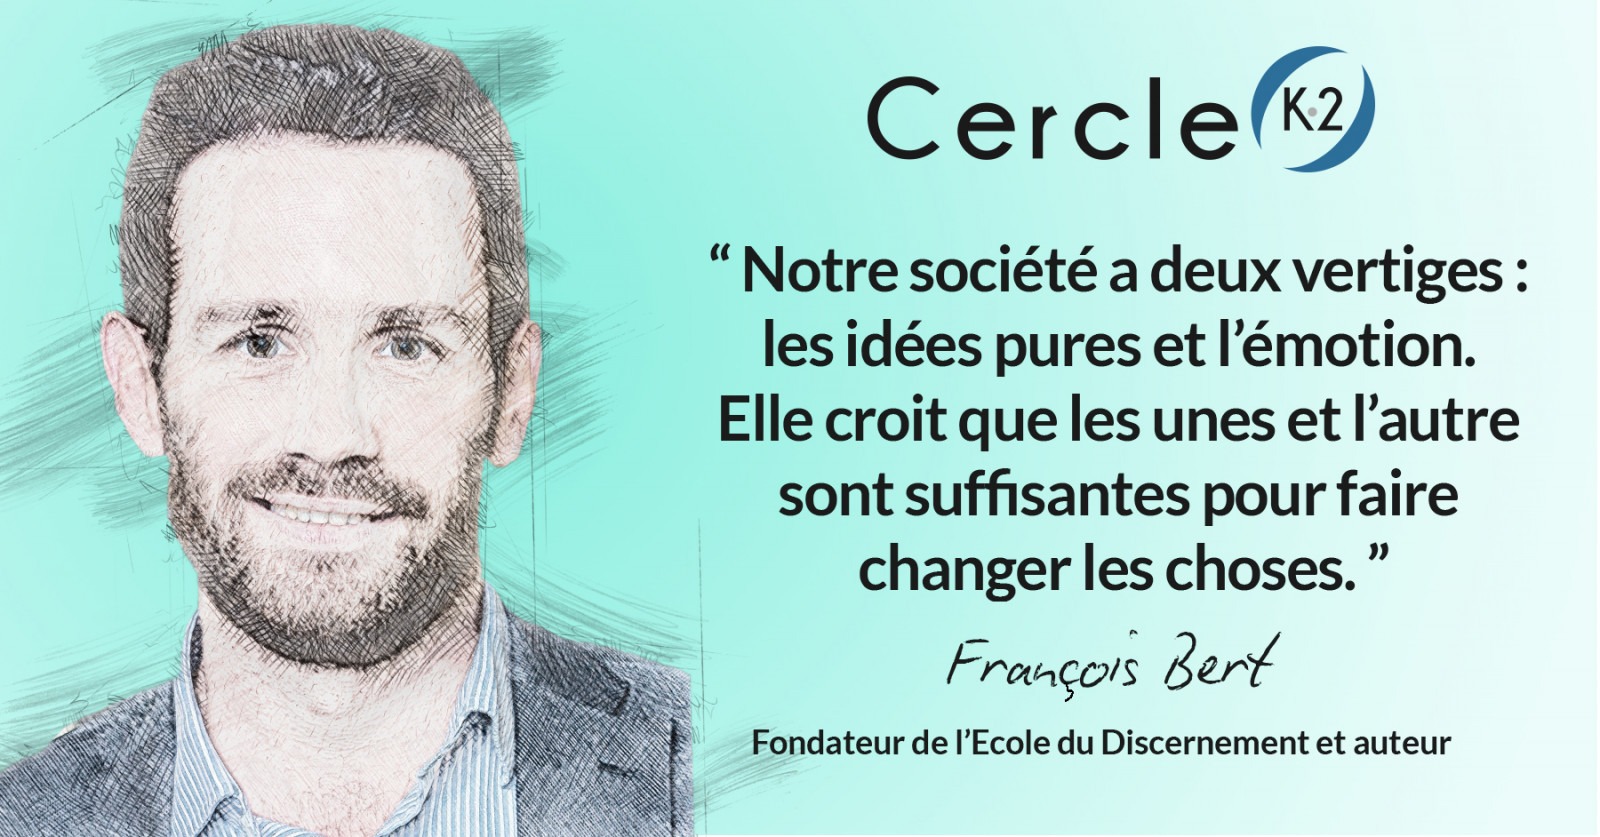 Entretien avec François Bert à l'occasion de la sortie de son livre "Le discernement - A l'usage de ceux qui croient qu'être intelligent suffit pour décider" - Cercle K2